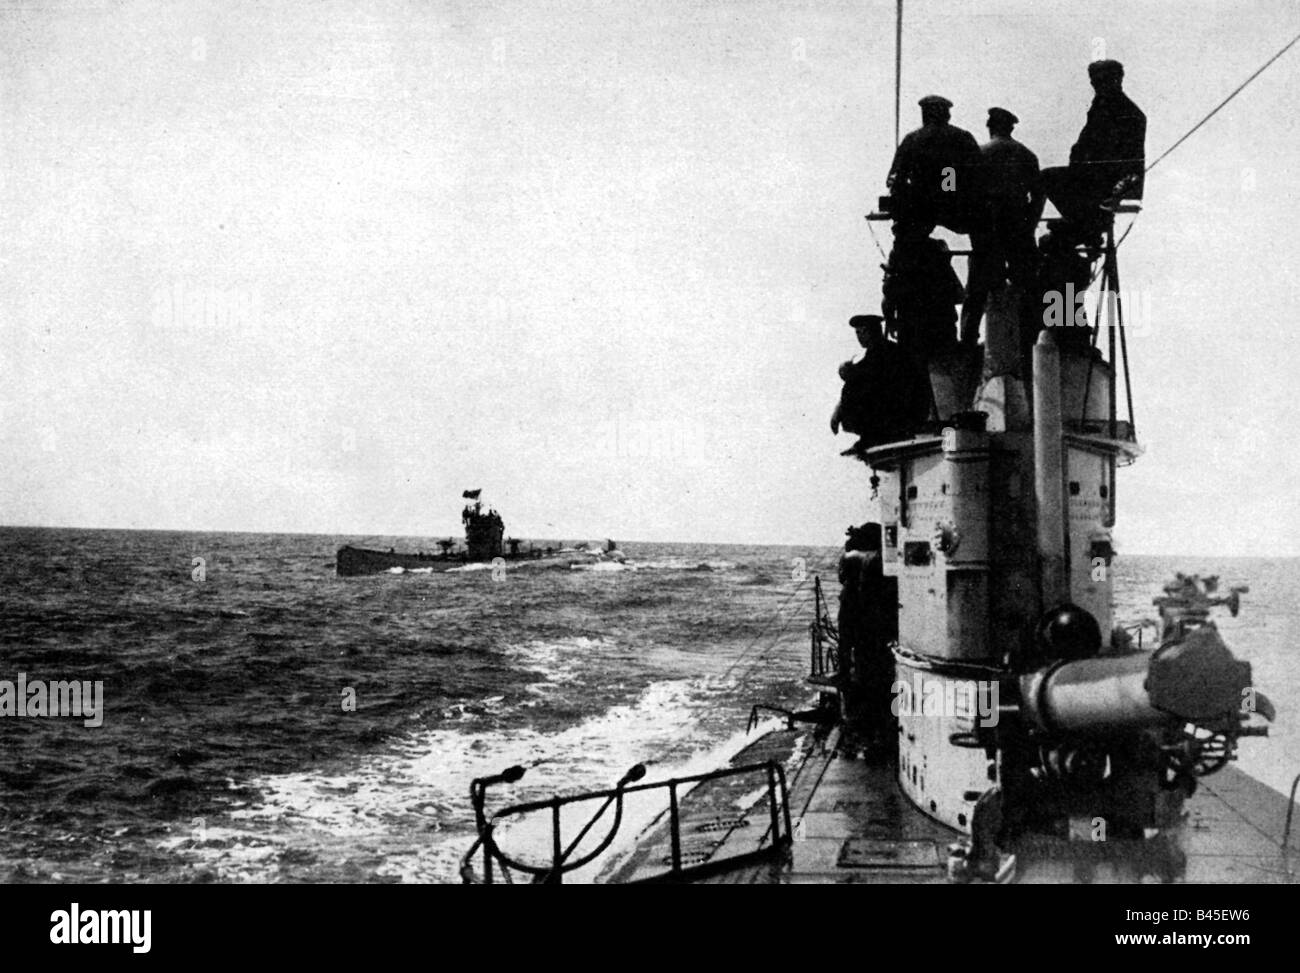 Événements, première Guerre mondiale / première Guerre mondiale, guerre navale, sous-marin allemand 'M U 52' (devant) rencontre 'M U 35' en Méditerranée, vers 1916, Banque D'Images